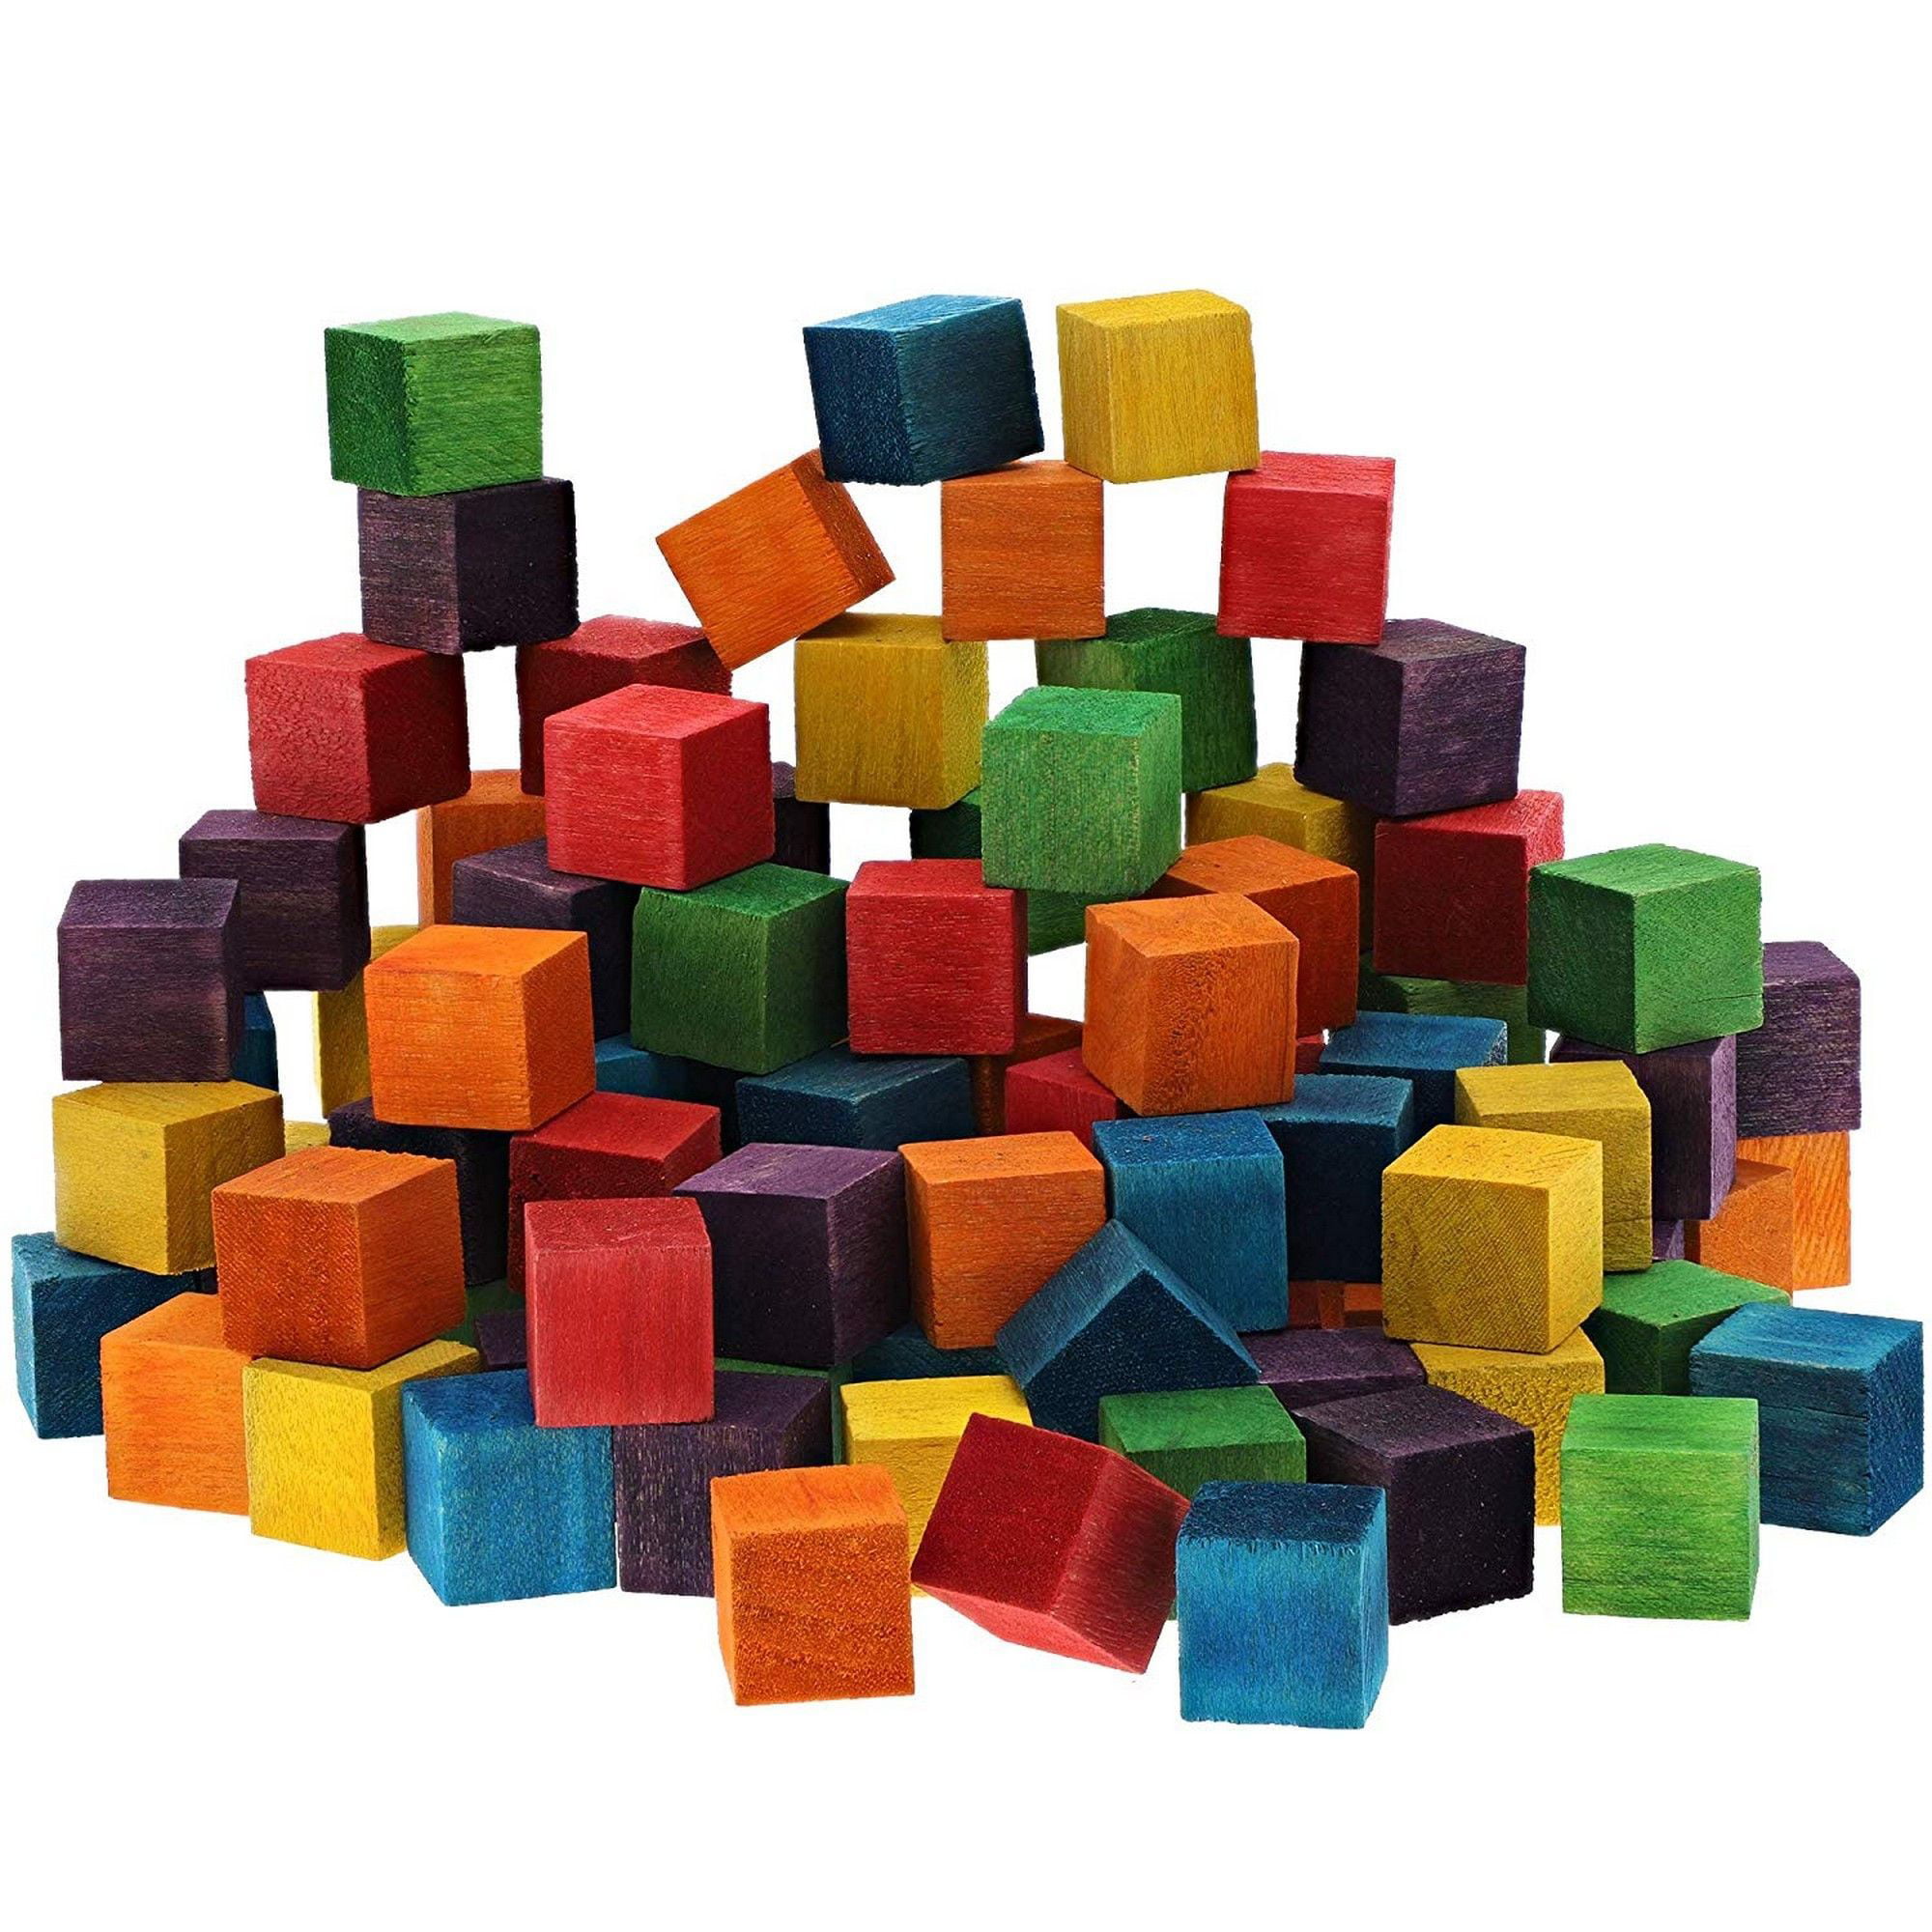 Color cube. Кубики Wooden Blocks. Кубики из разных материалов. Кубики фото. Цвета кубики.